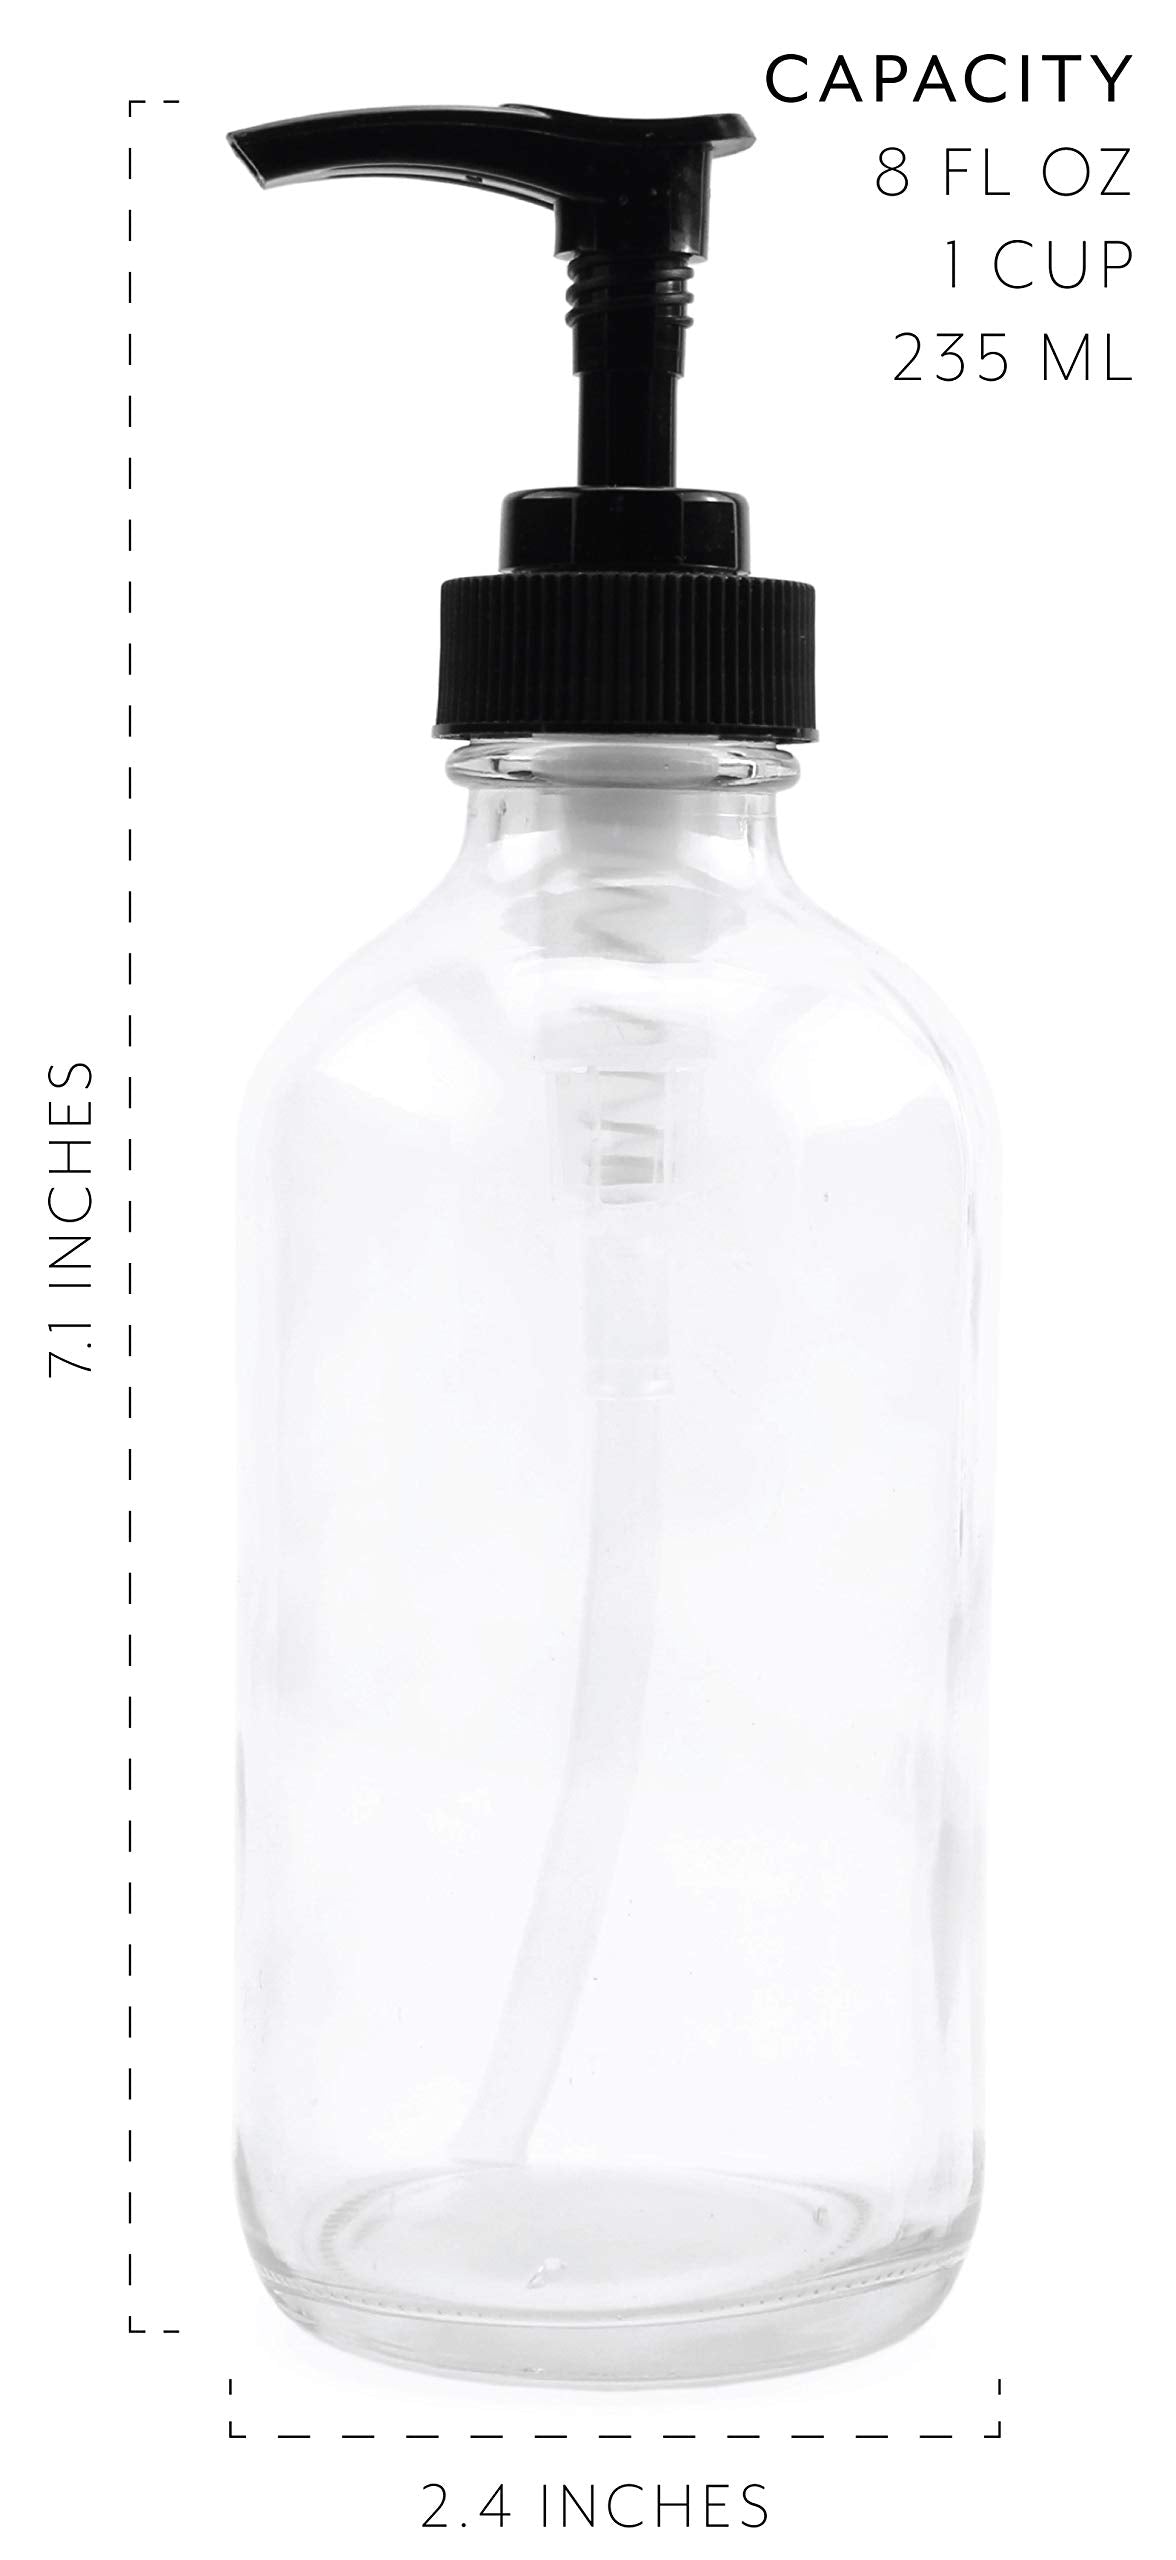 8oz Clear Glass Pump Bottles (4-Pack w/Black Plastic Pumps)